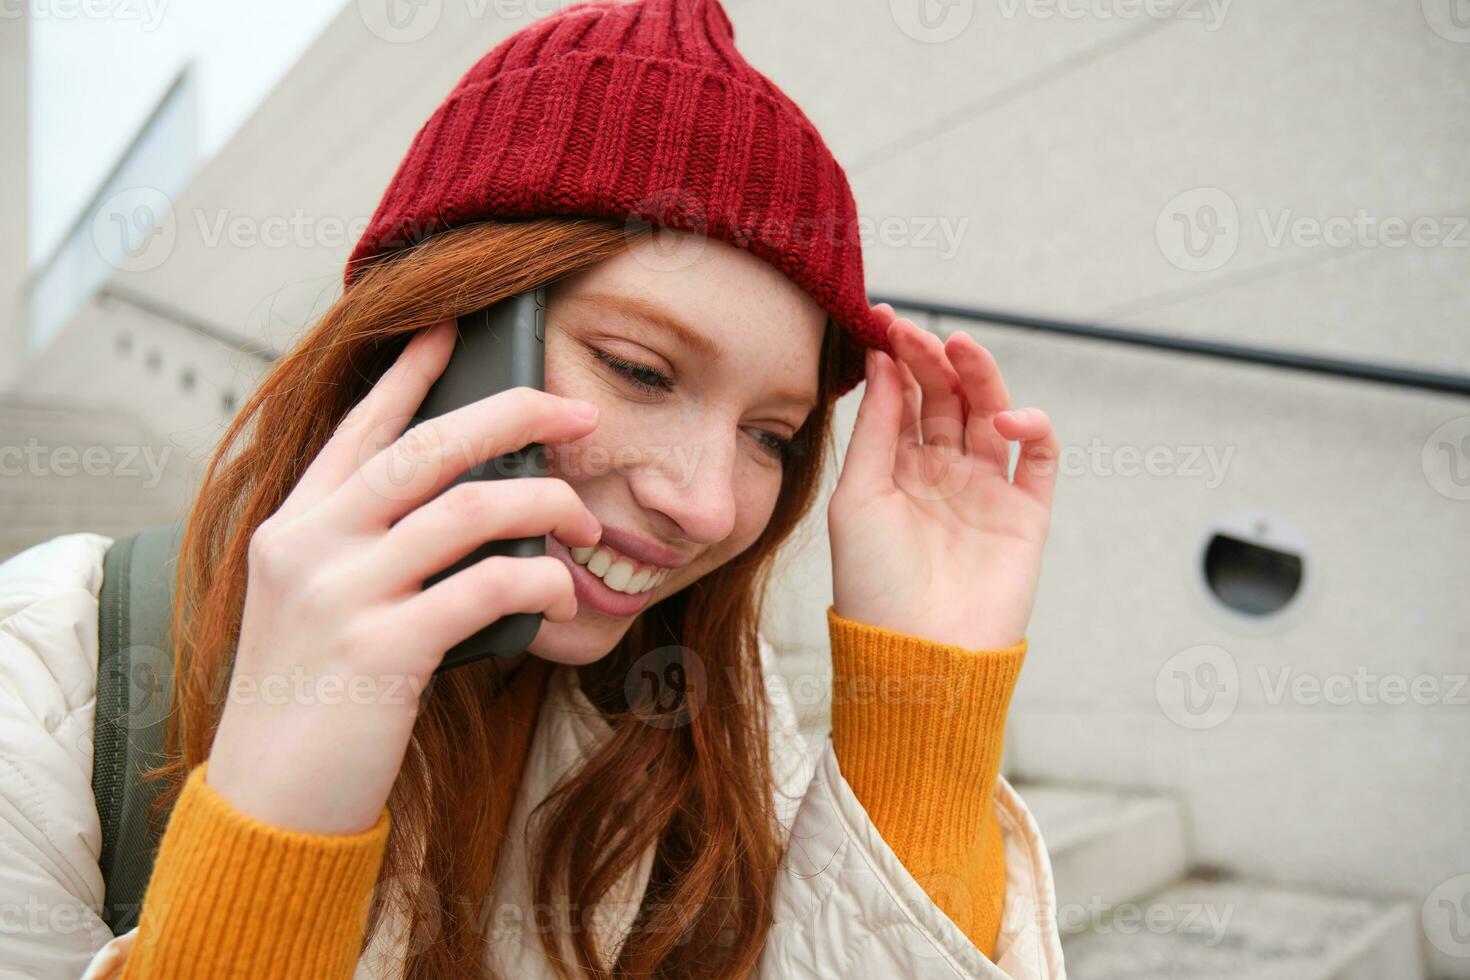 jong elegant roodharige meisje in rood hoed, zit Aan straat en praat Aan mobiel telefoon, heeft telefoon gesprek, ringen haar vriend terwijl ontspant buitenshuis foto